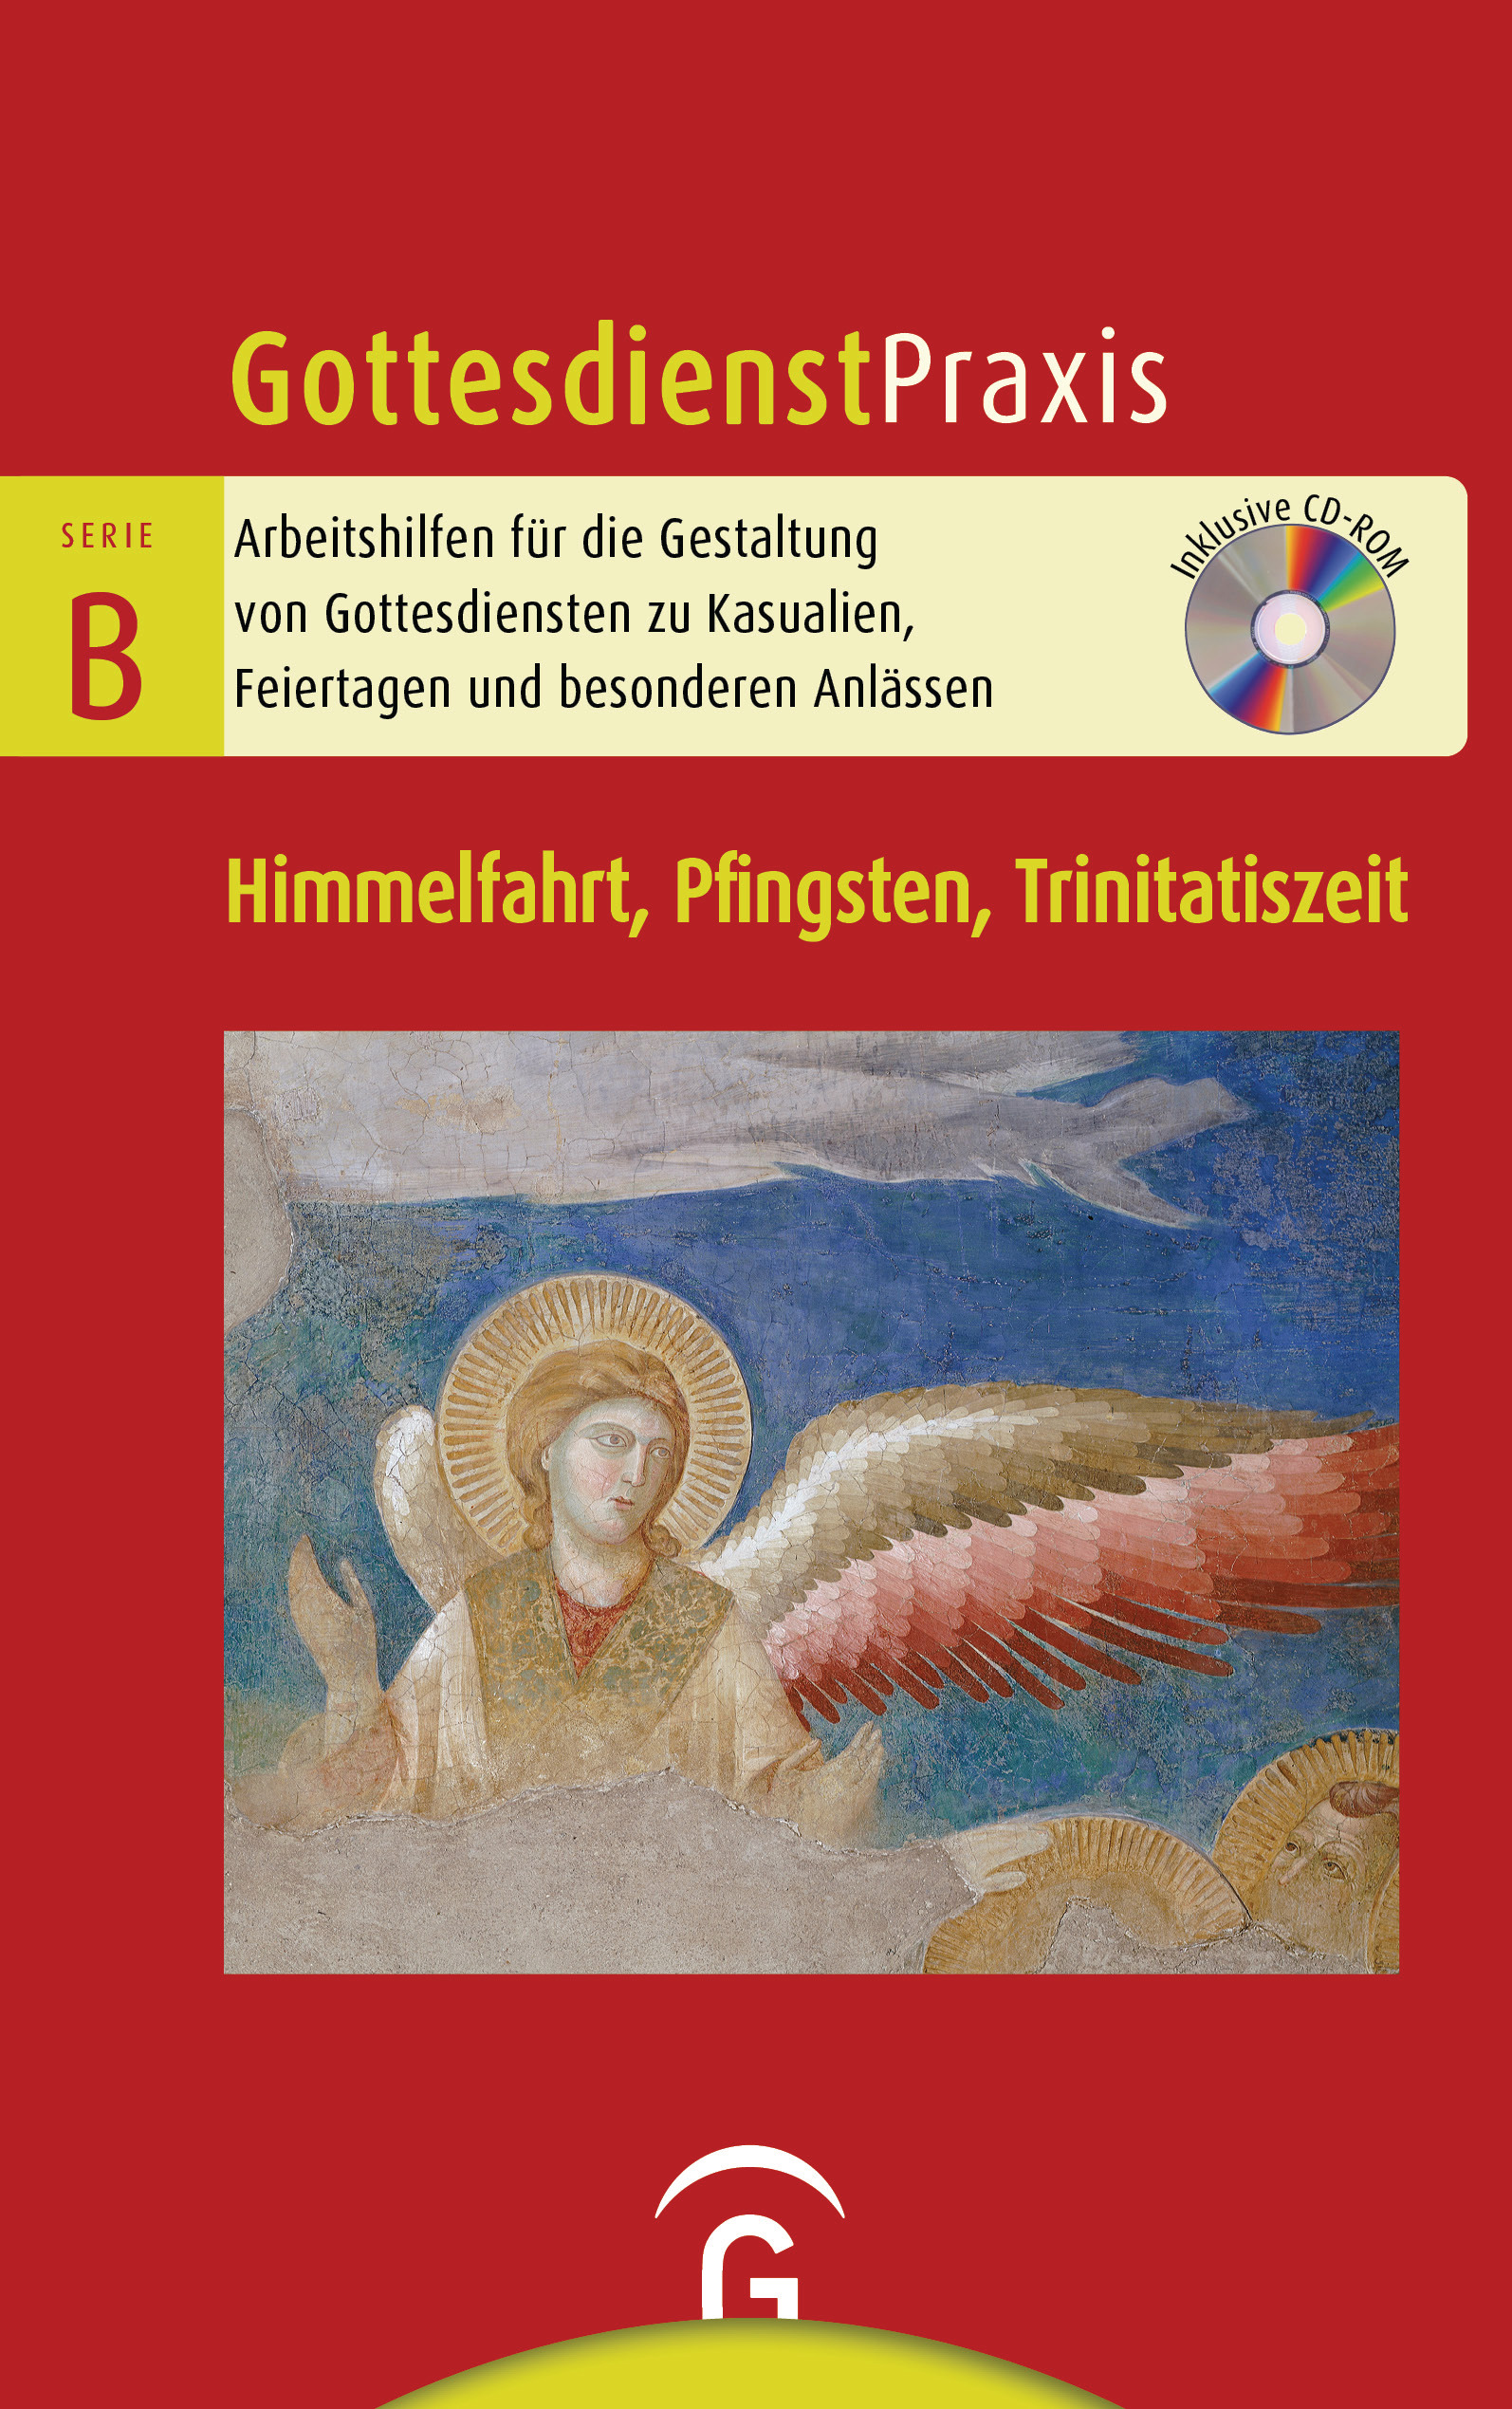 Gottesdienstpraxis Serie B Himmelfahrt, Pfingsten, Trinitatiszeit